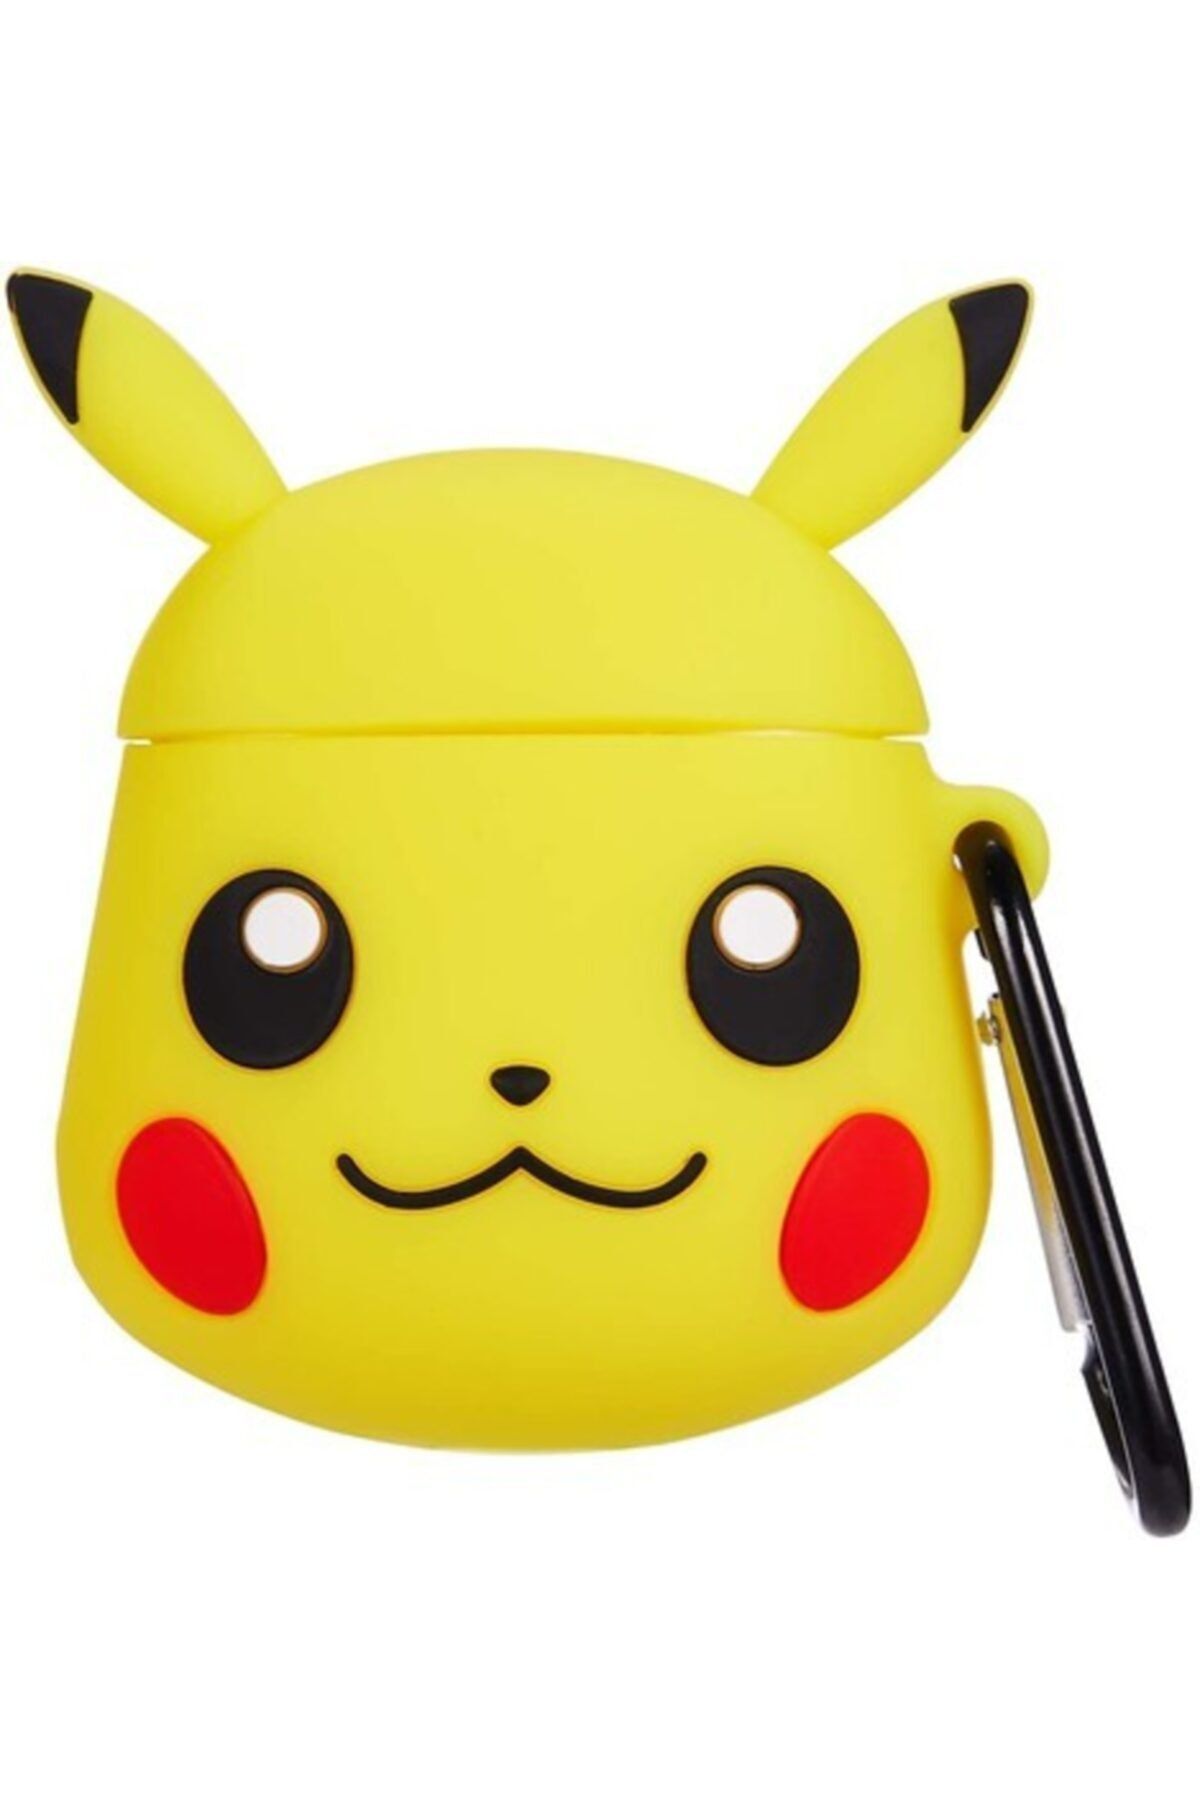 MY MÜRDÜM Sevimli Pikachu  Kılıfı 1. Ve 2. Nesil